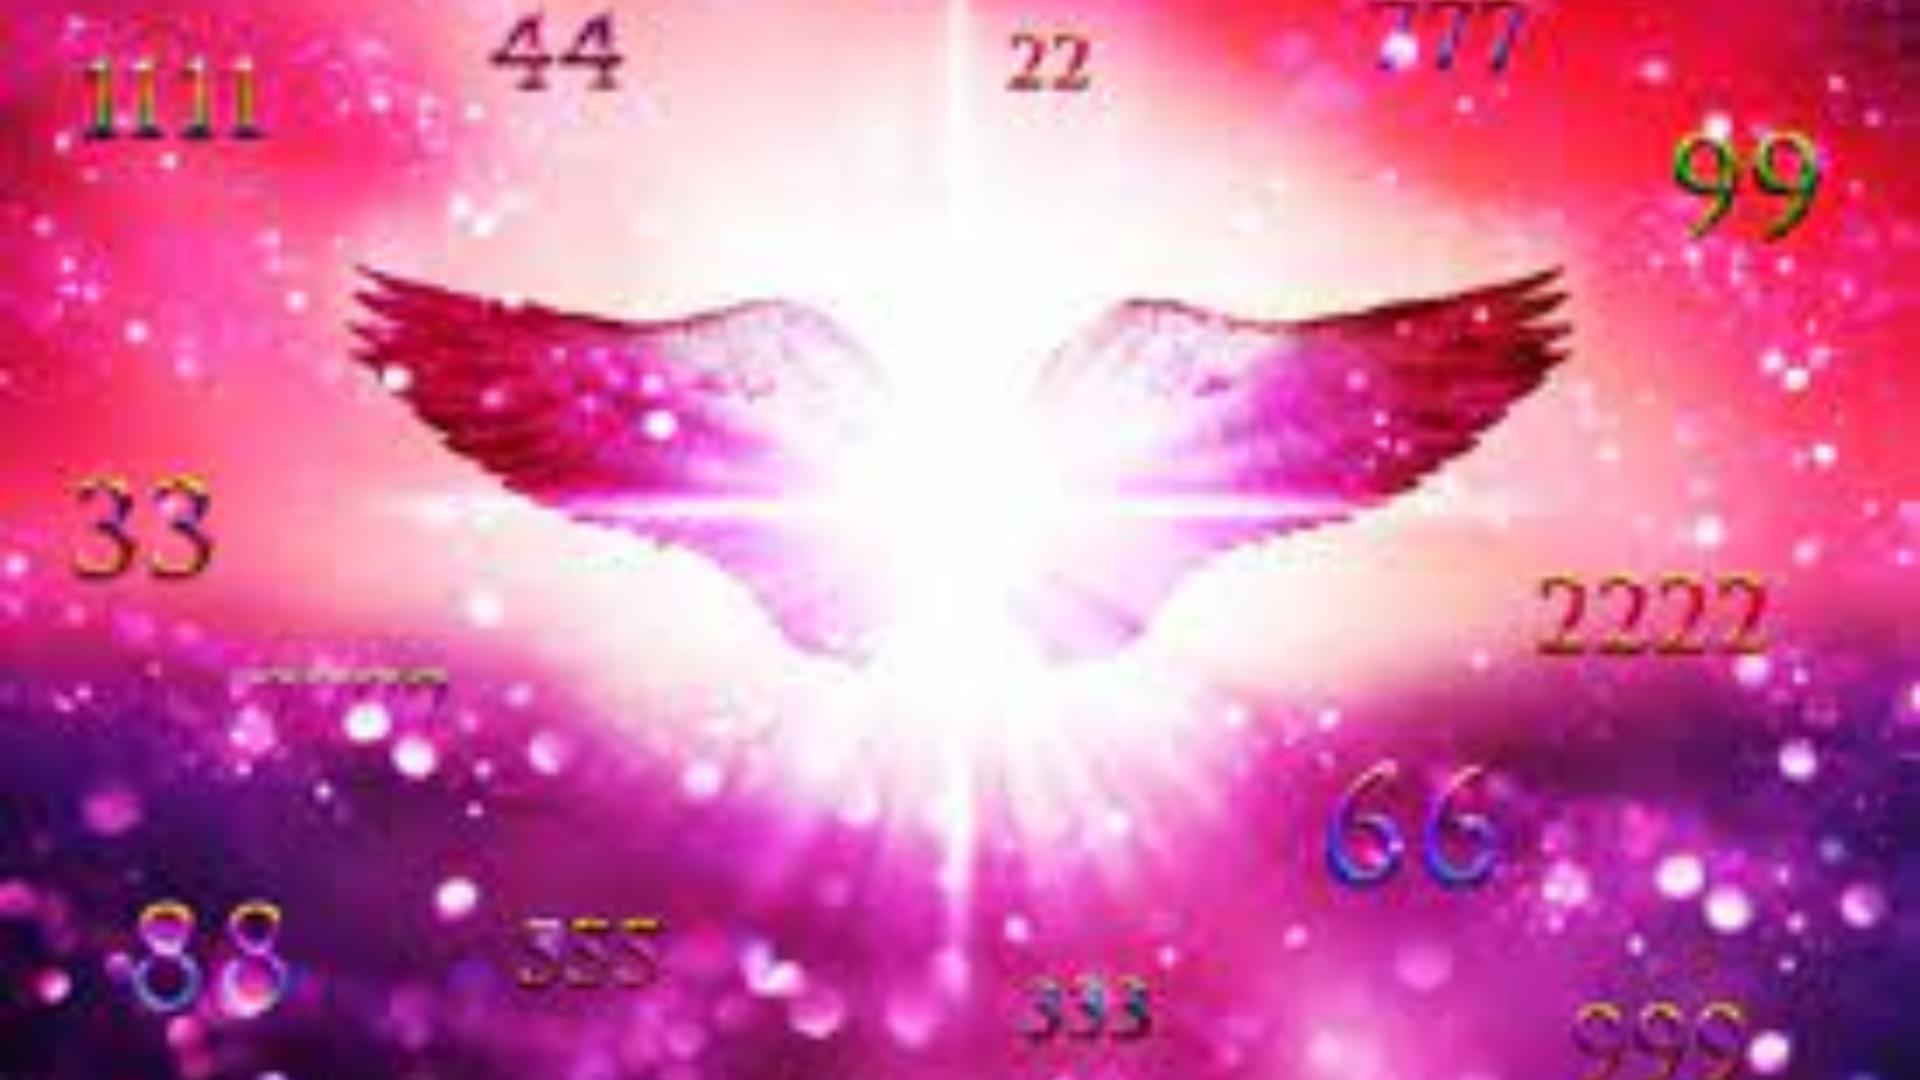 Ce sunt “numerele îngerilor” și ce înseamnă dacă vezi aceste numere că se repetă în jurul tău